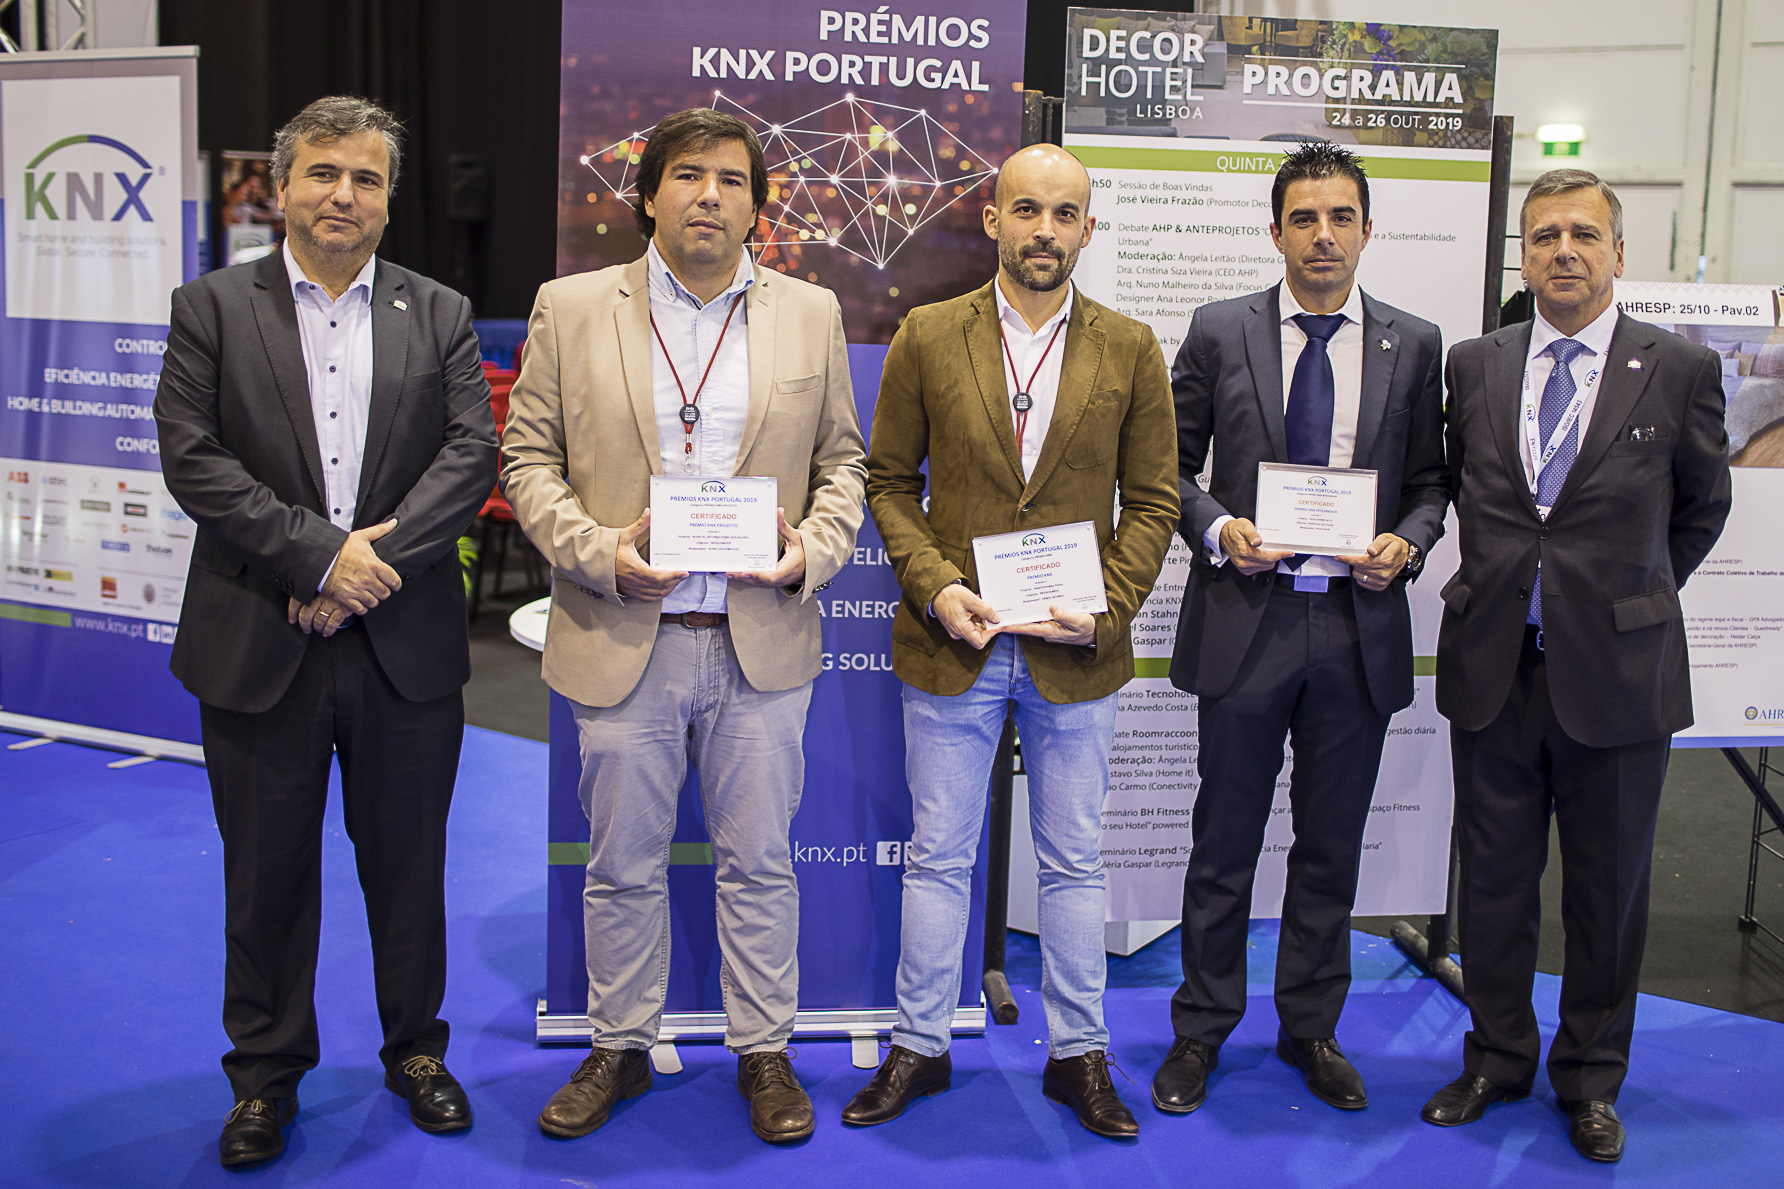 Os trs premiados KNX com Fernando Ferreira e Rui Carneiro, da KNX